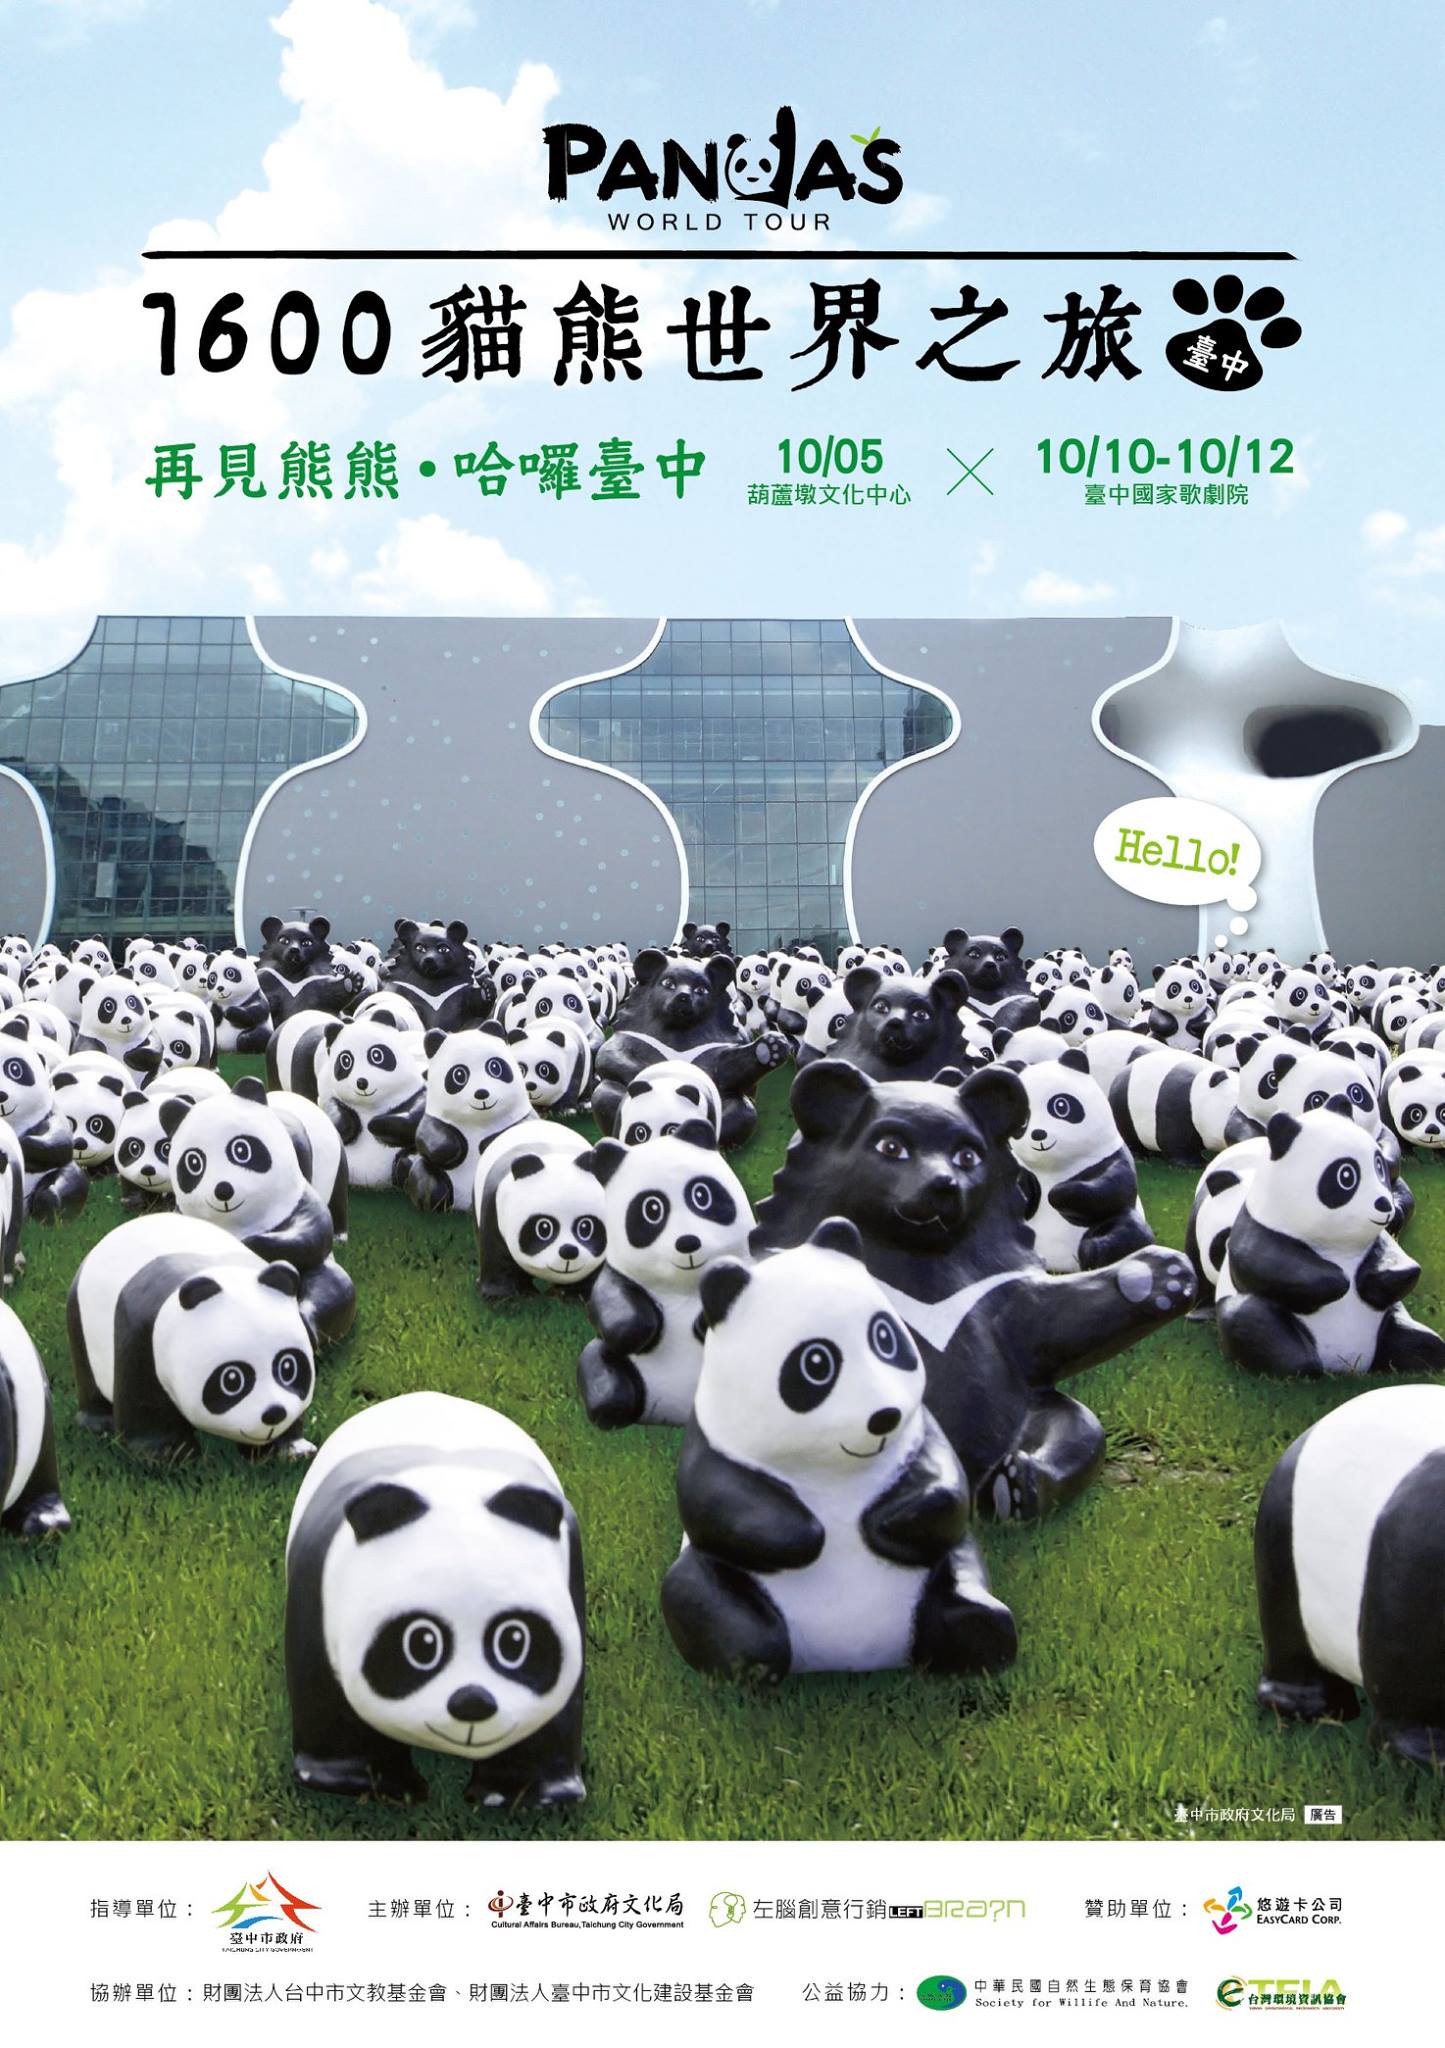 貓熊世界之旅，最後兩週將在台中國家歌劇院、葫蘆墩文化中心展出。(圖片來源／紙貓熊展，1600貓熊世界之旅-臺北粉絲專頁）